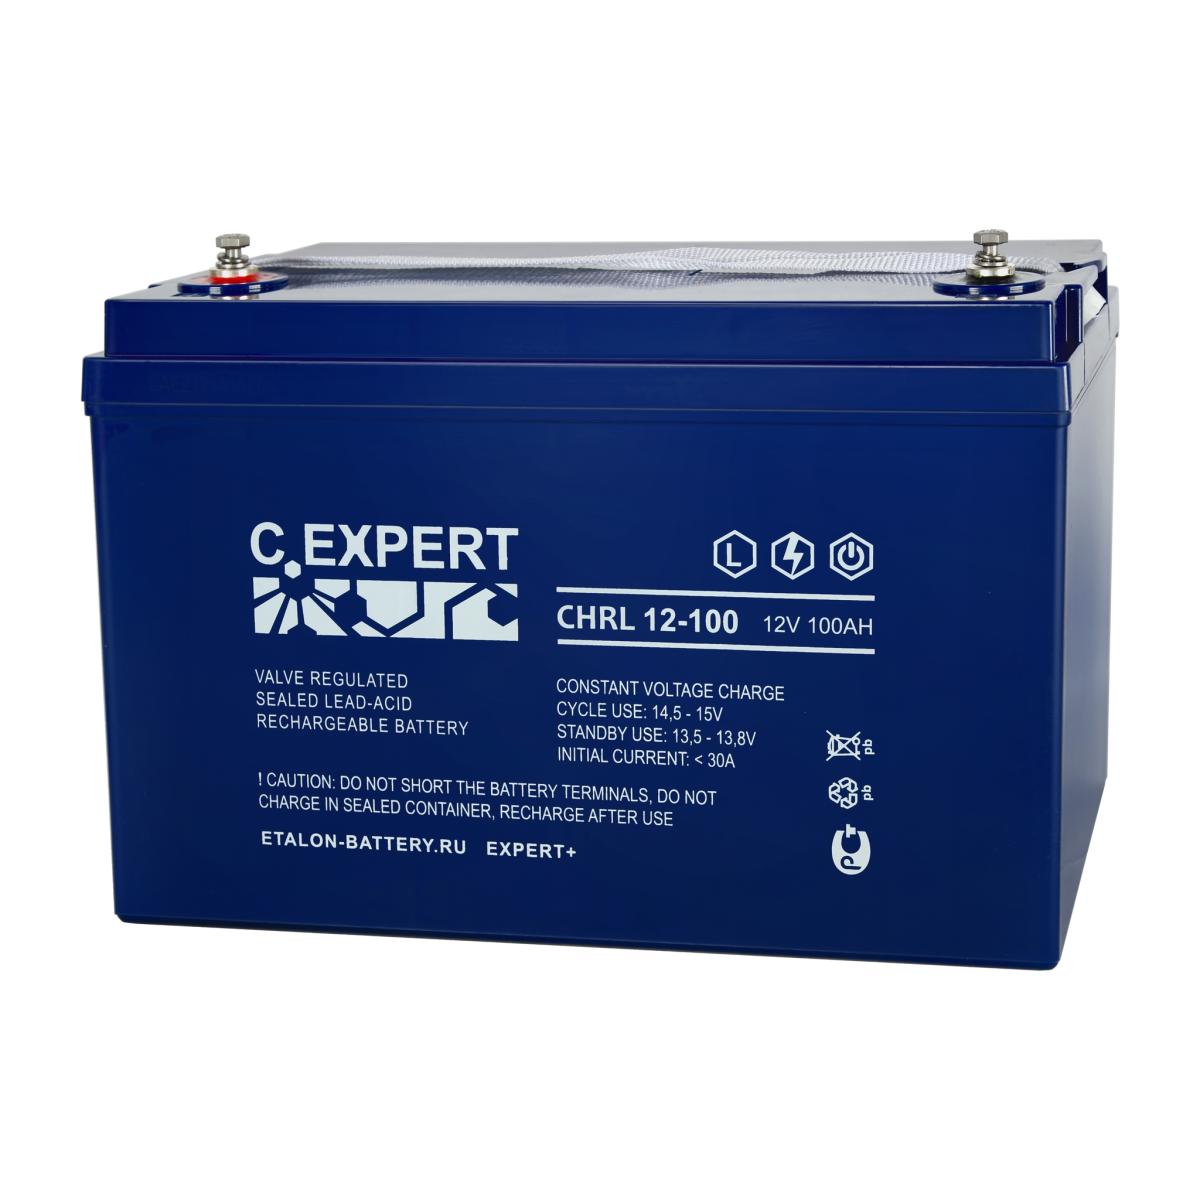 EXPERT CHRL 12-100 Аккумулятор герметичный свинцово-кислотный